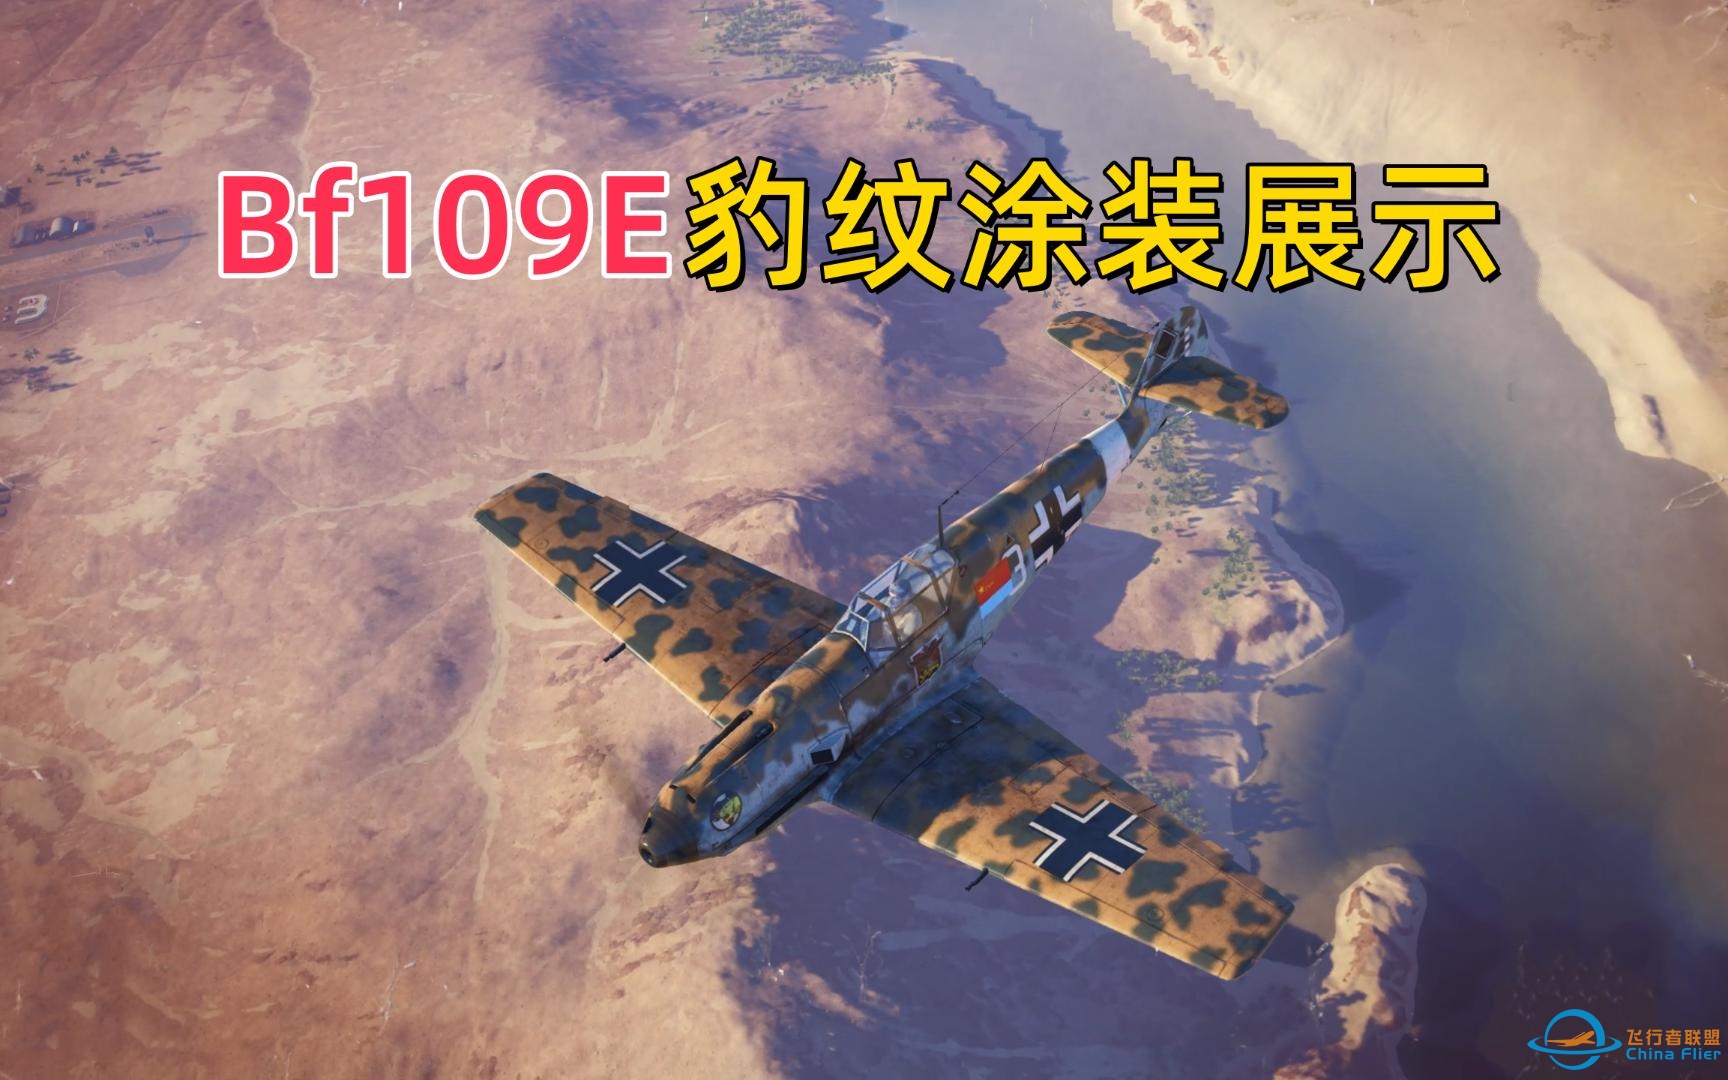 [战机世界]梅塞施密特Bf109E豹纹涂装展示-8307 